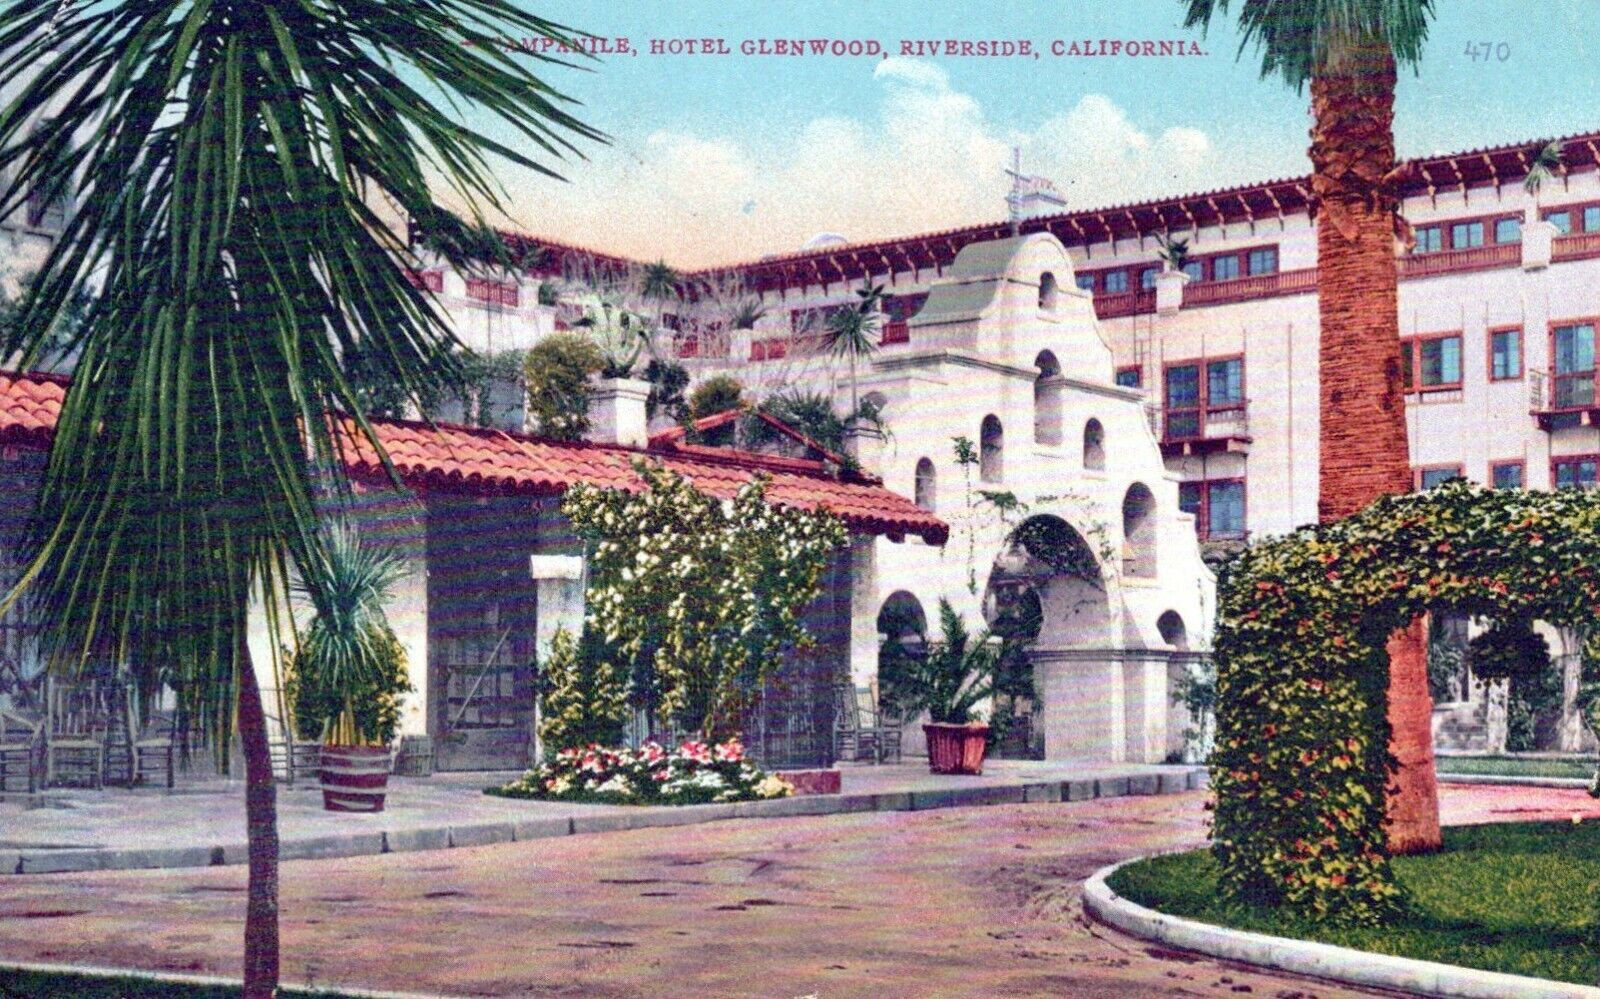 Hotel Glenwood Riverside California Vintage Divided Back Post Card